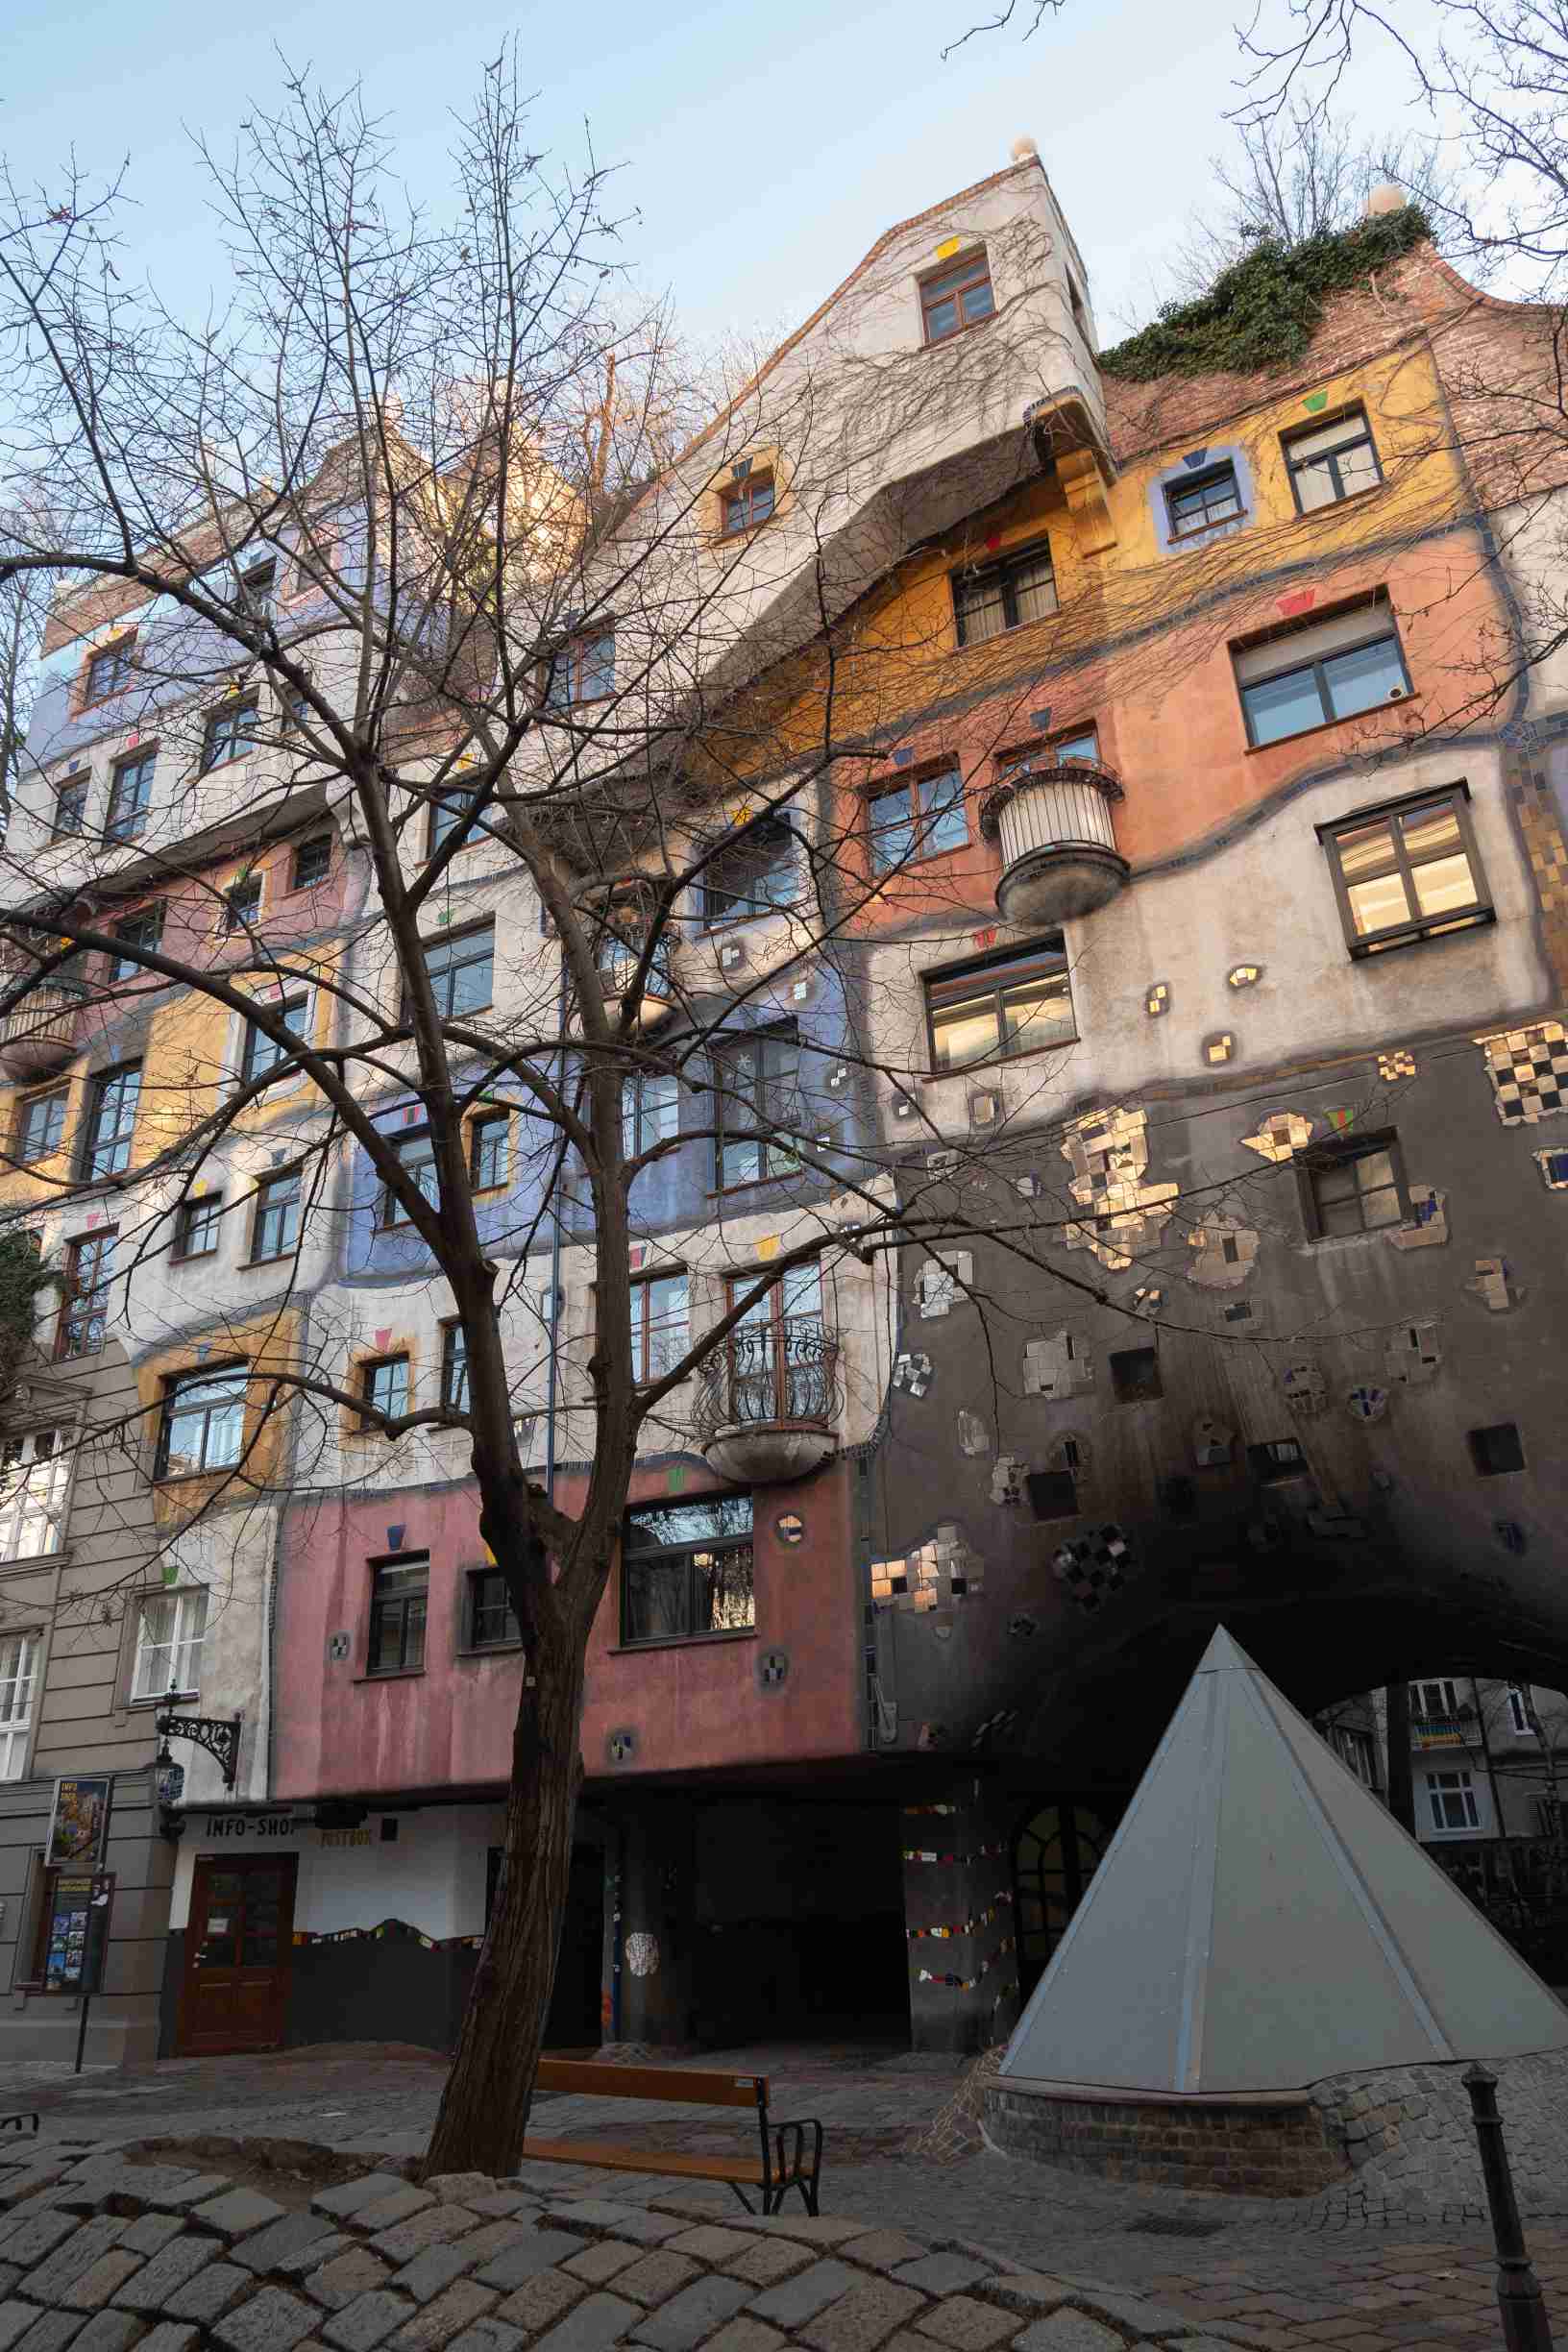 Les différentes habitations de la maison Hundertwasser